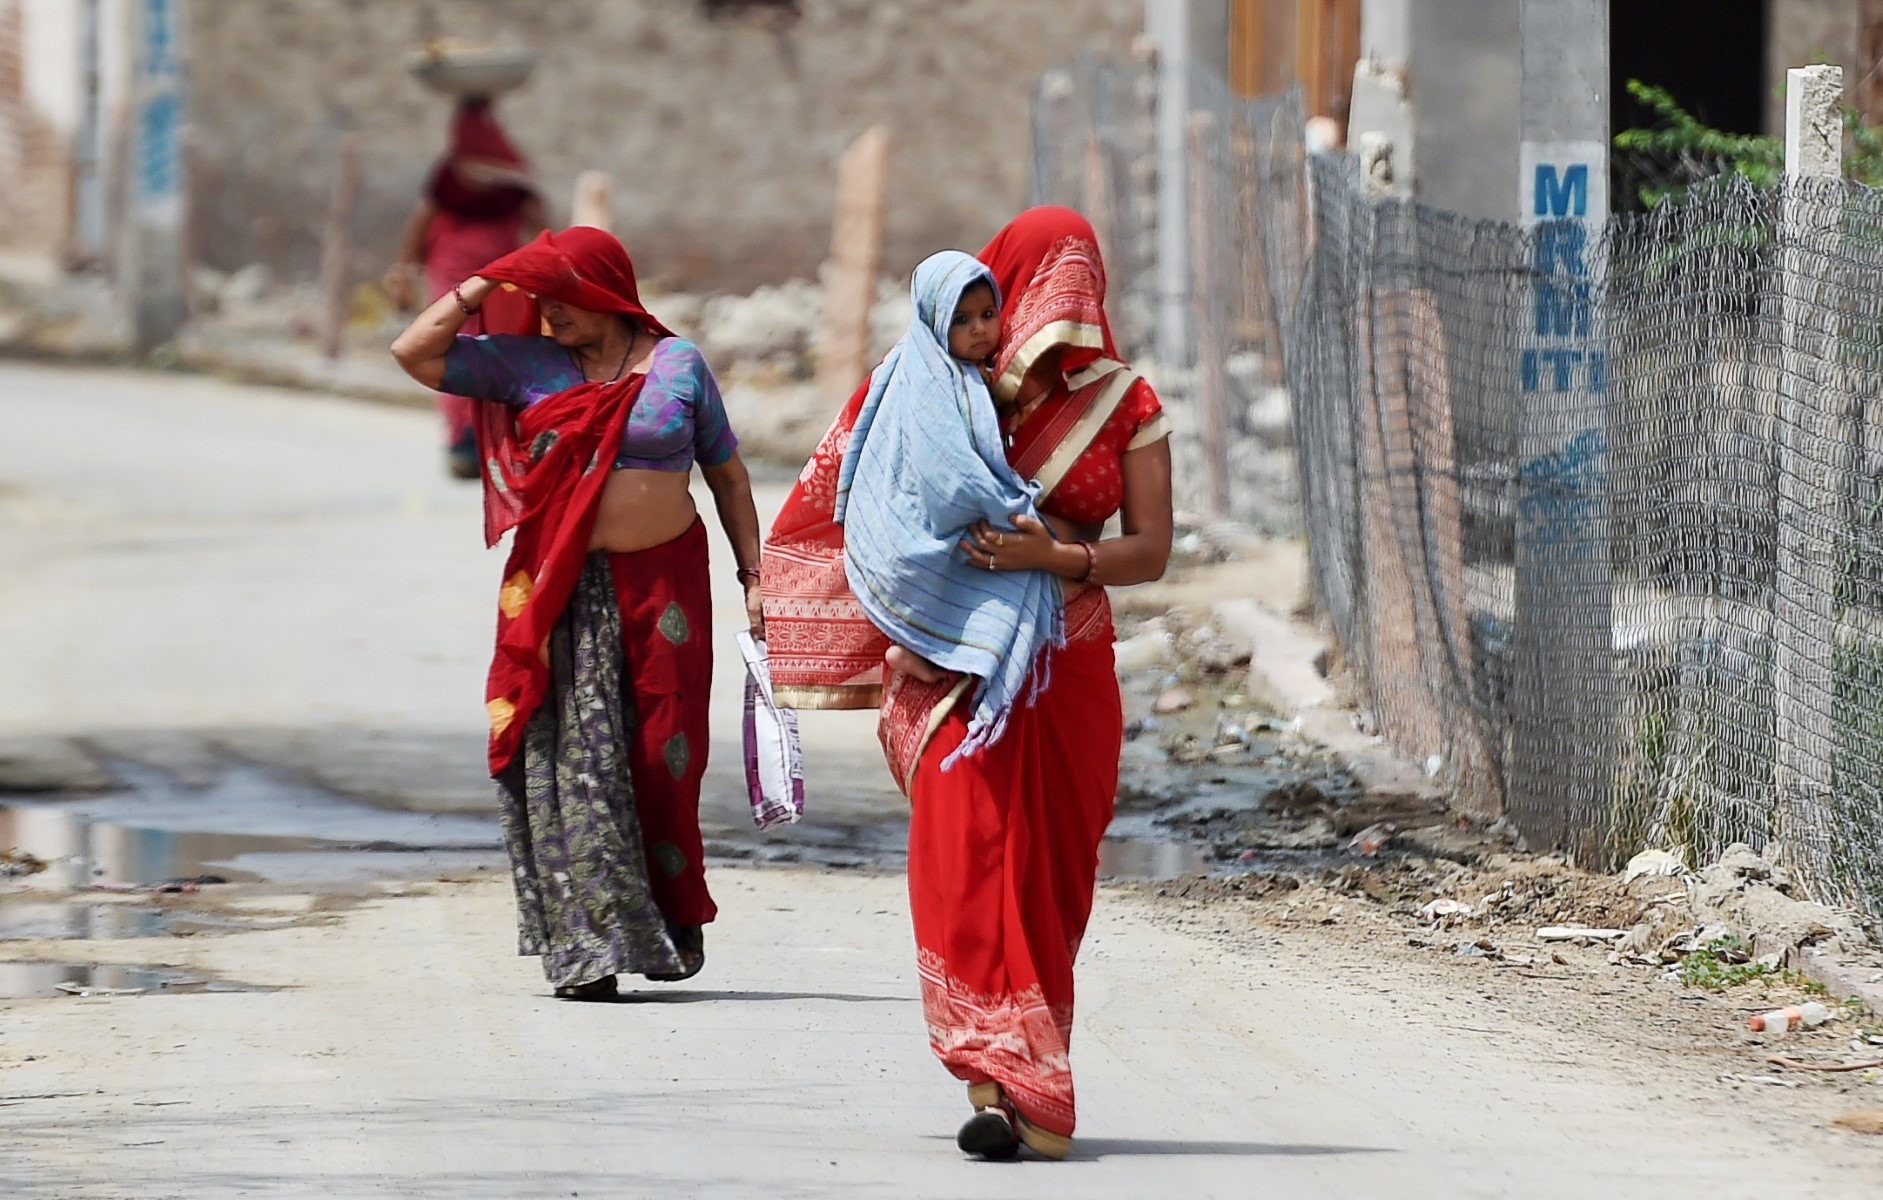 Những người phụ nữ Ấn Độ che kín mặt để tránh nóng trong một ngày nắng nóng ở Churu, bang Rajasthan của Ấn Độ vào ngày 4.6.2019. Trong vòng 3 ngày, khu vực này của Ấn Độ đã 2 lần ghi nhận nhiệt độ lên tới 50 độ C. Ảnh: AFP